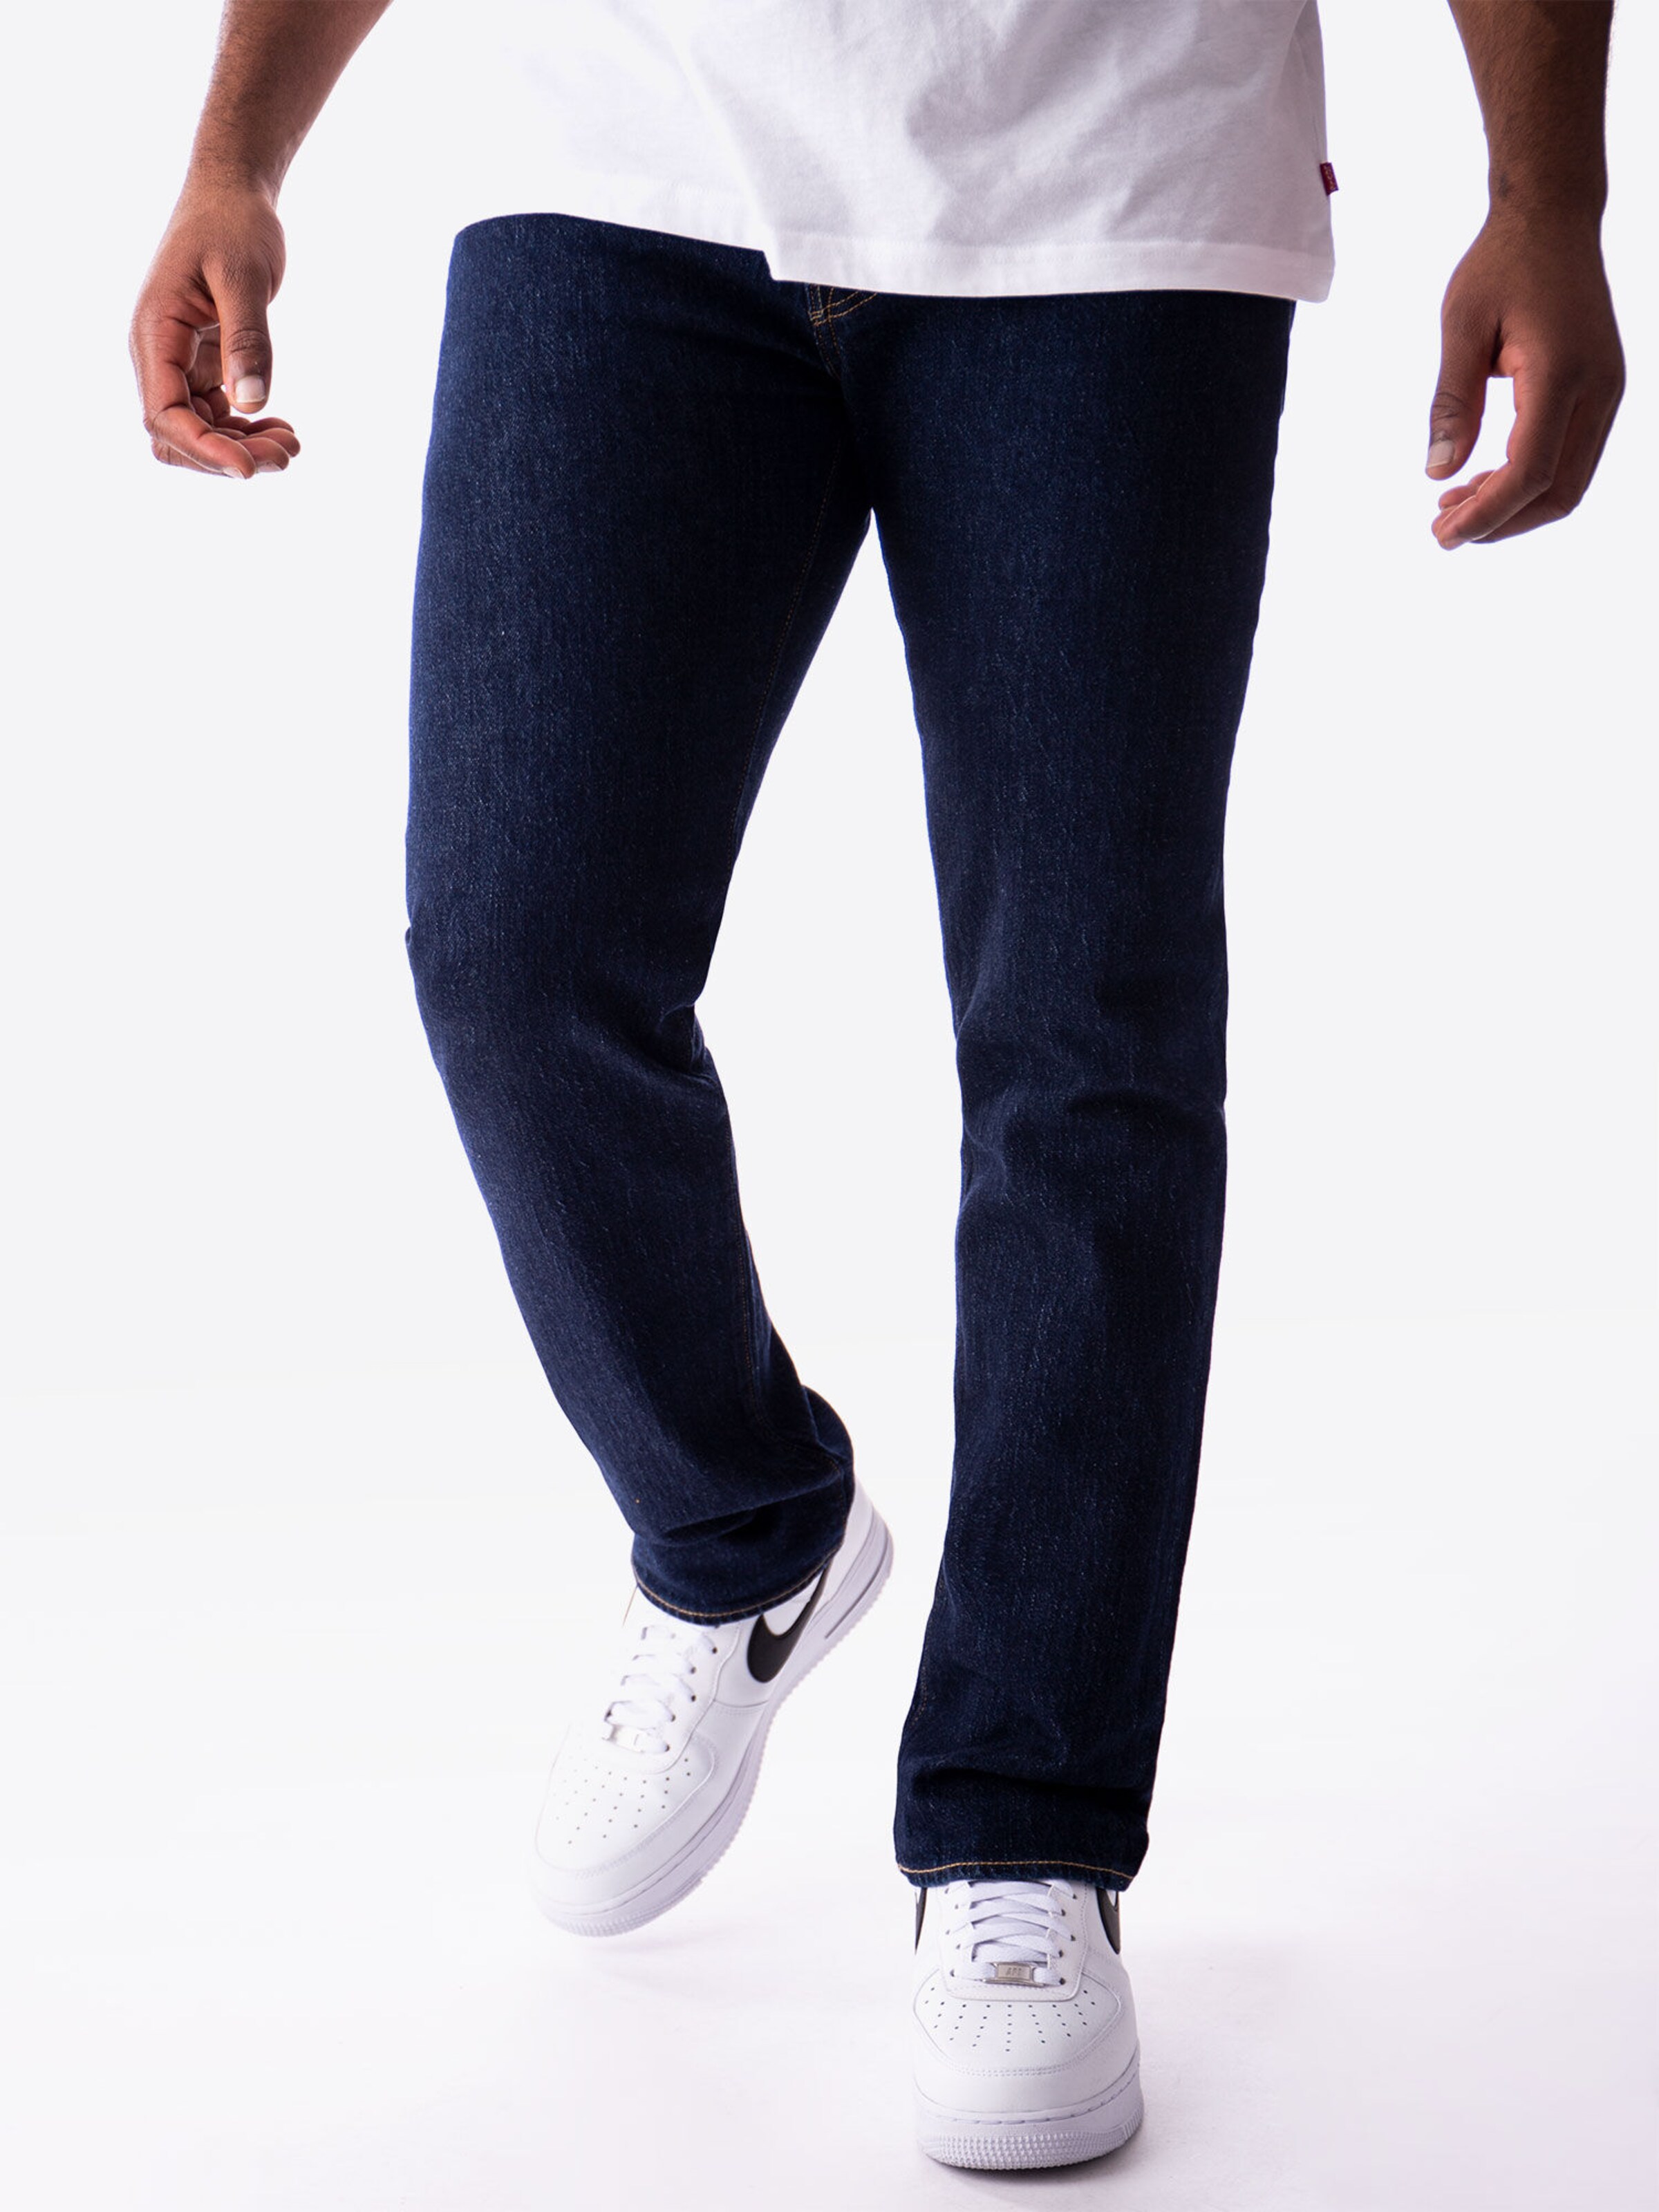 Jeans nK4k9 LEVIS Jeans 501 in Blu Scuro 